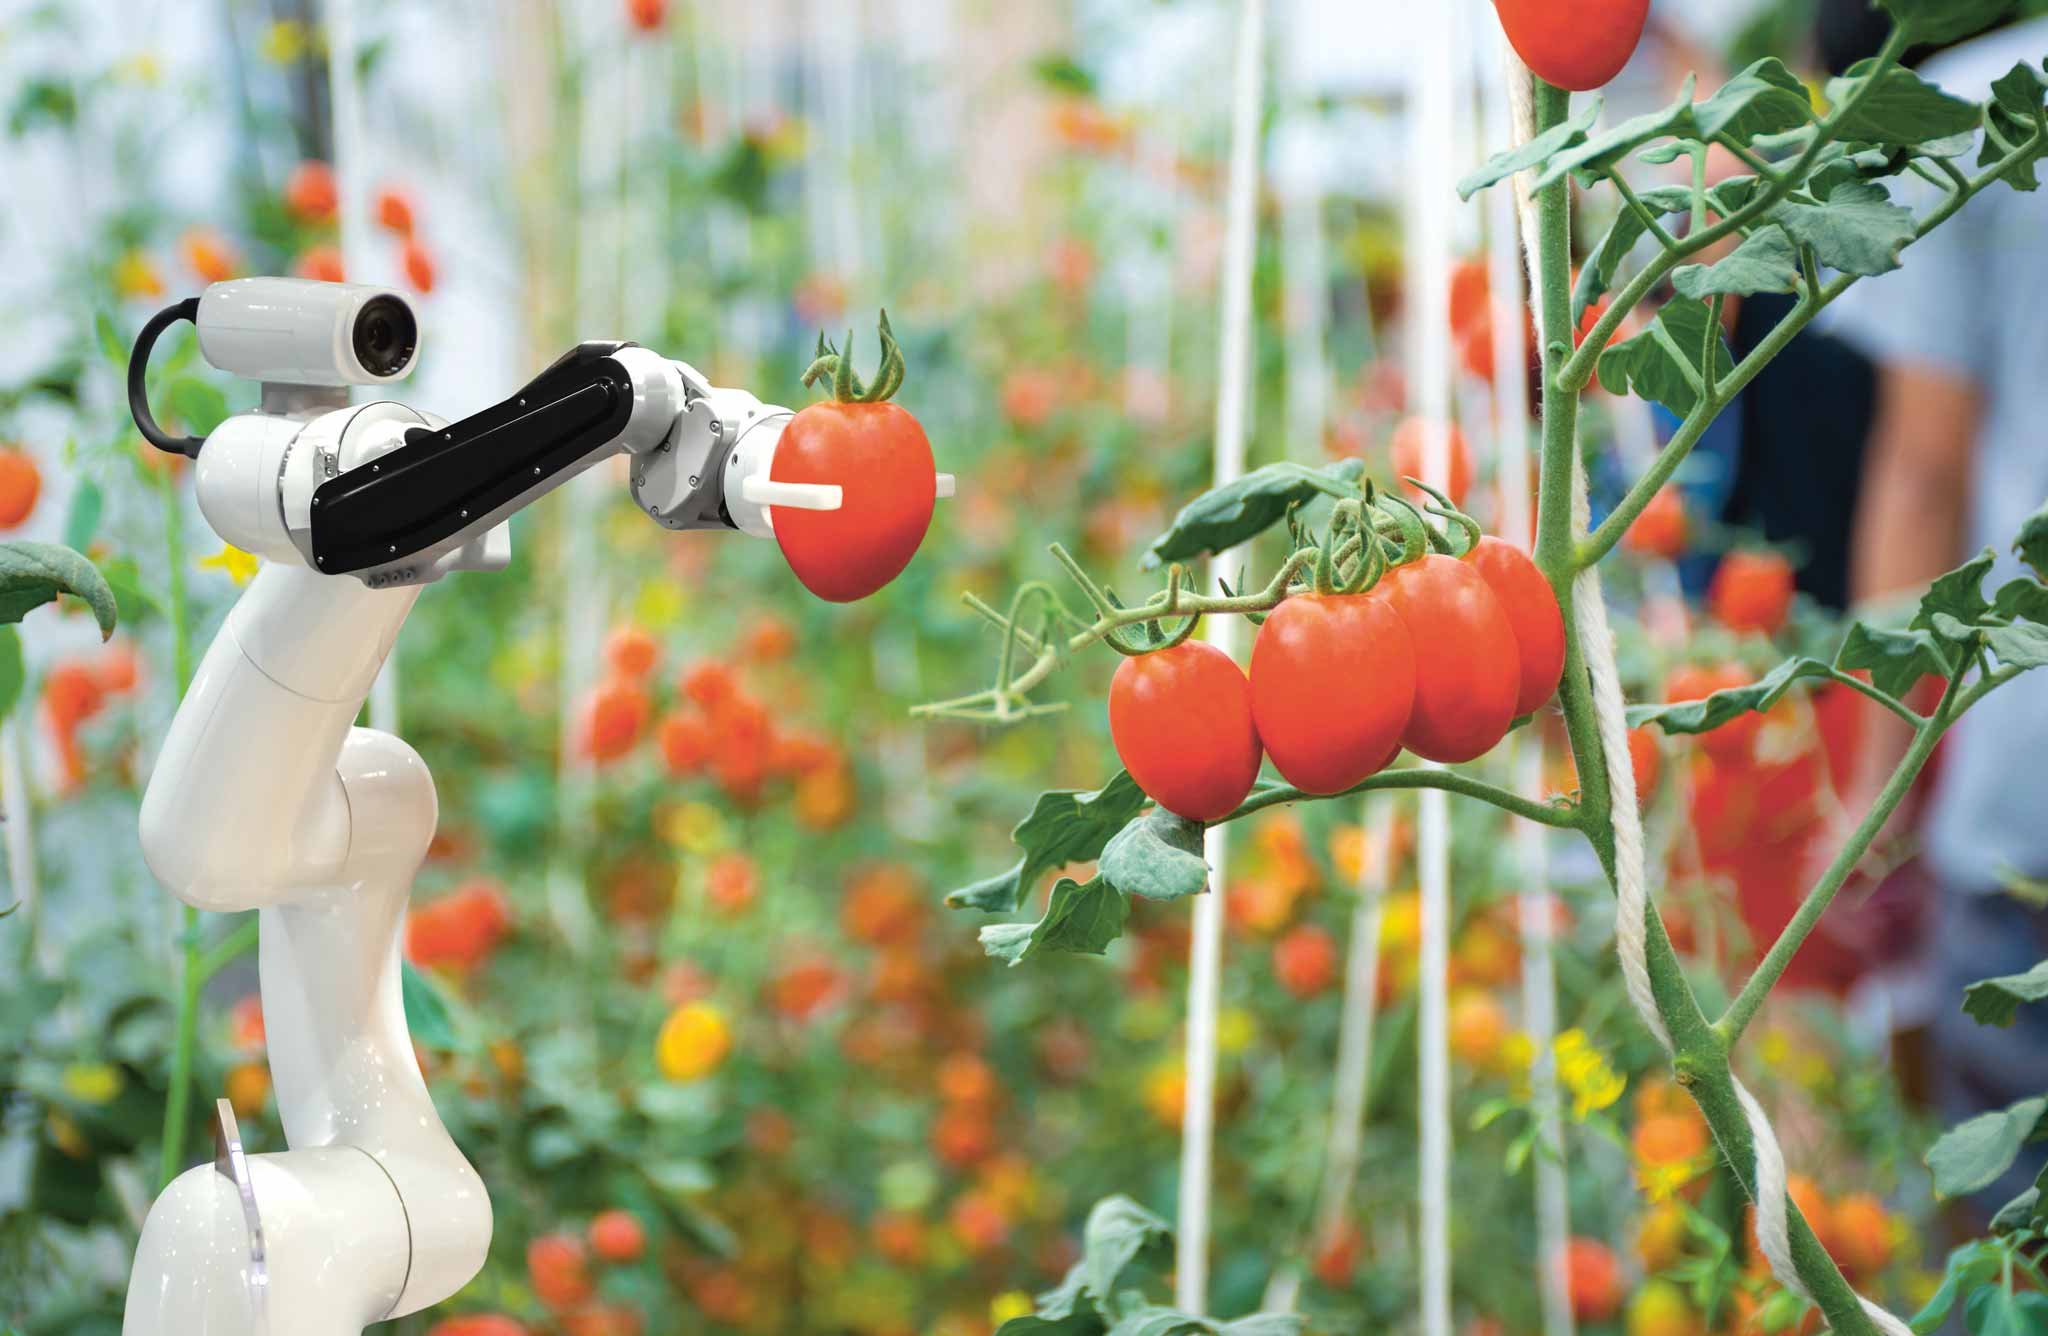 Viele Landwirte gehen davon aus, dass sie in ihrer Arbeit künftig verstärkt von Robotern unterstützt werden.